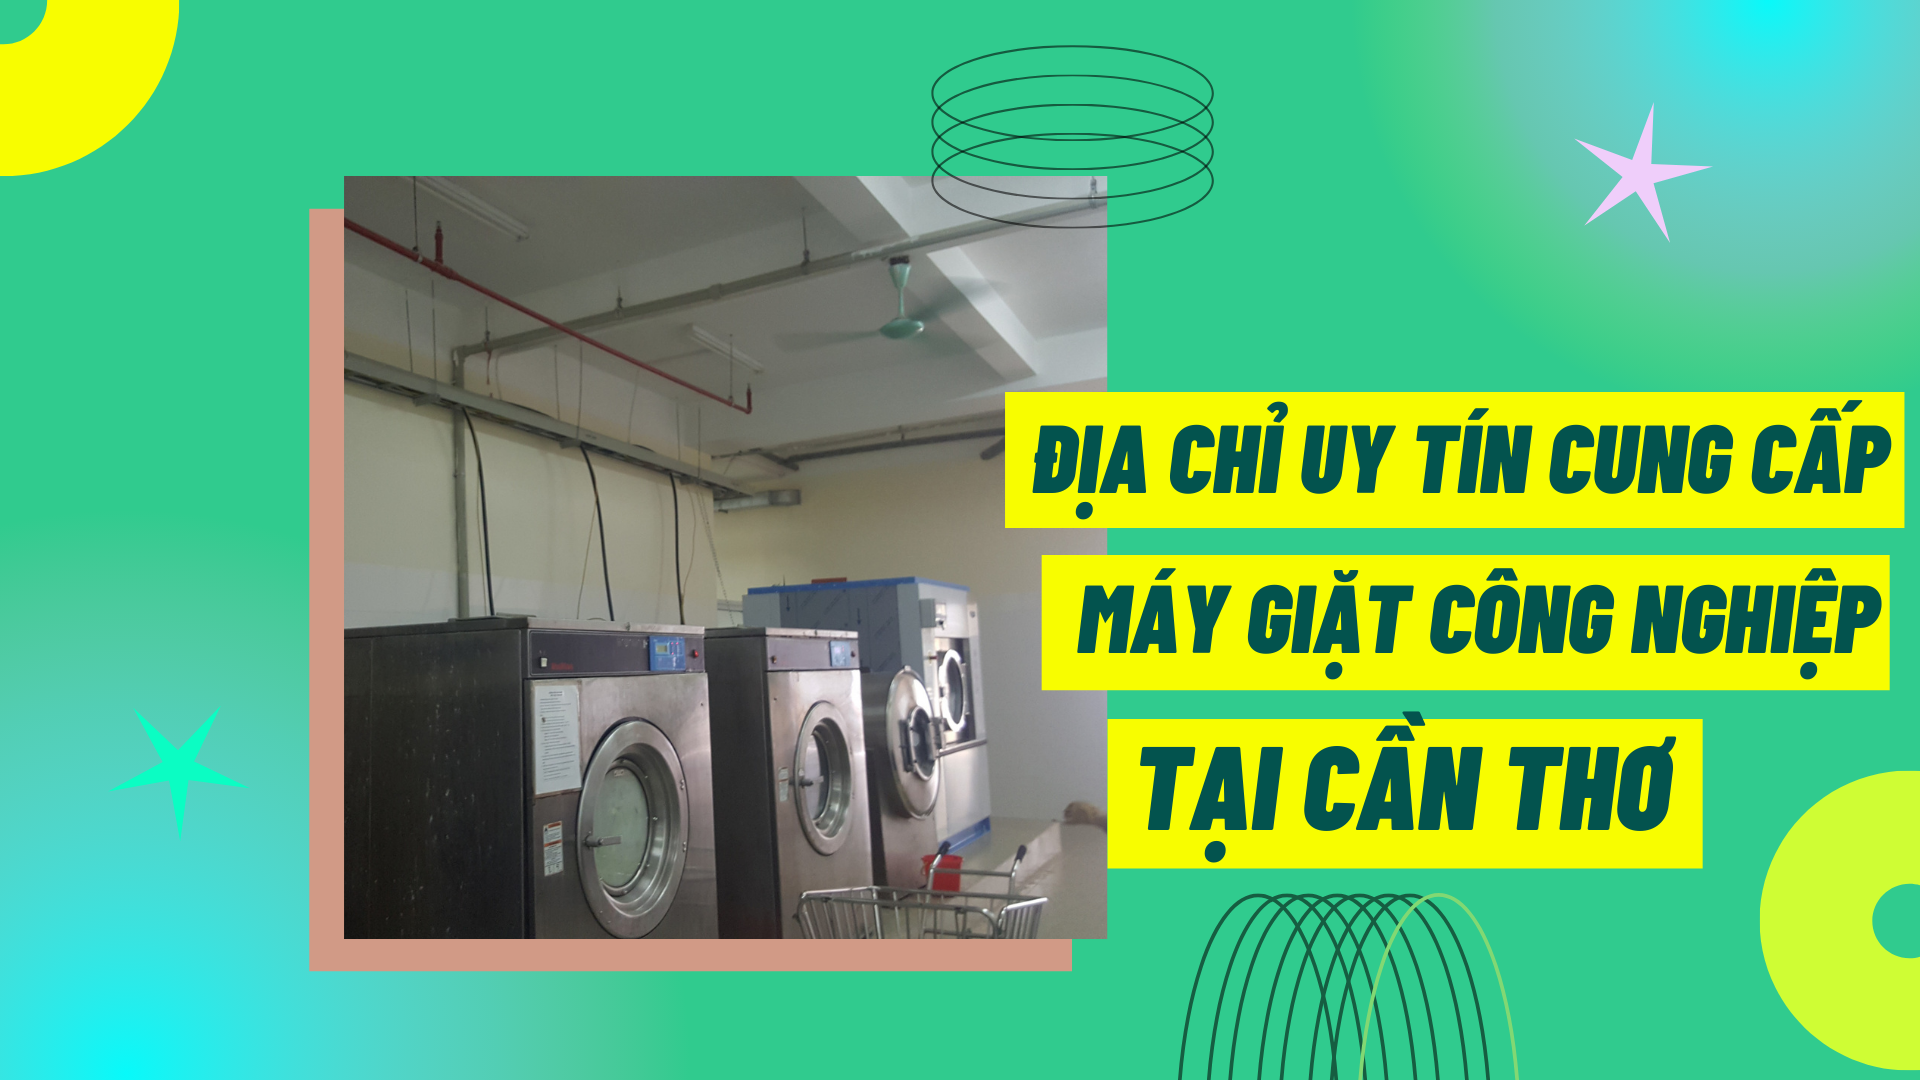 Địa chỉ uy tín cung cấp máy giặt công nghiệp tại Cần Thơ